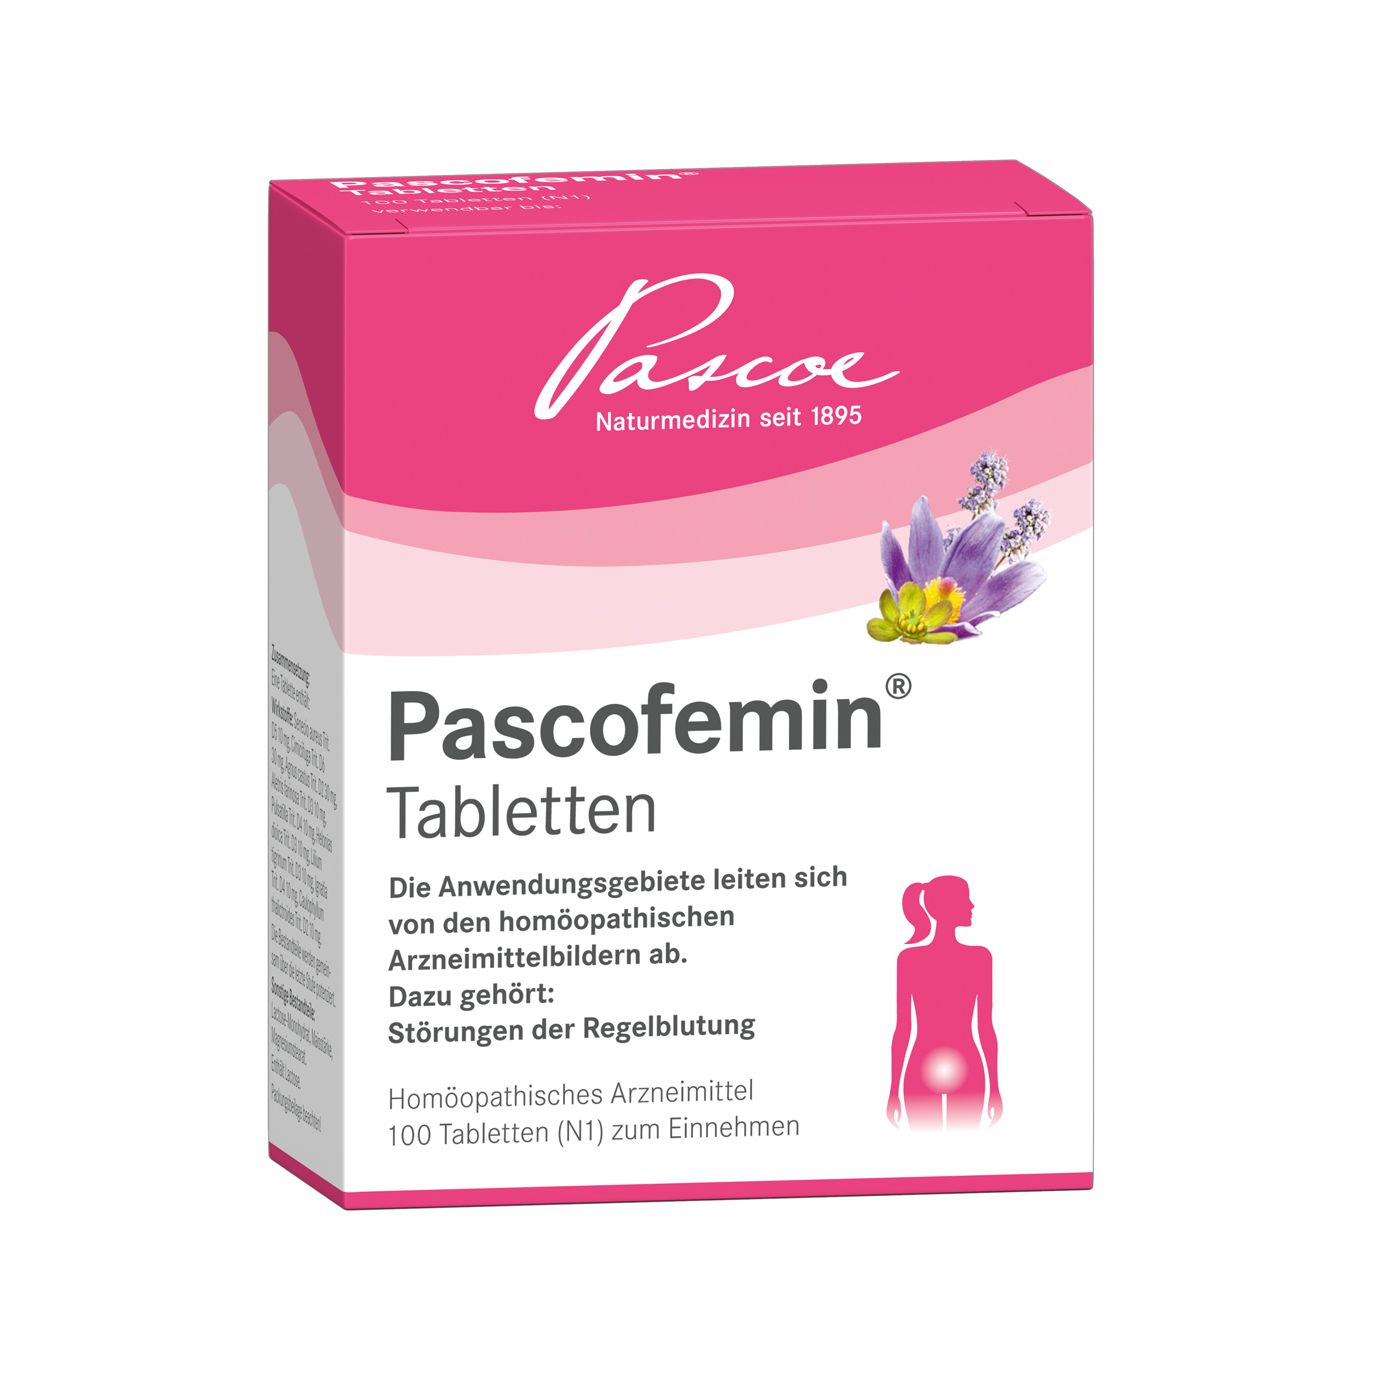 Pascofemin® Tabletten